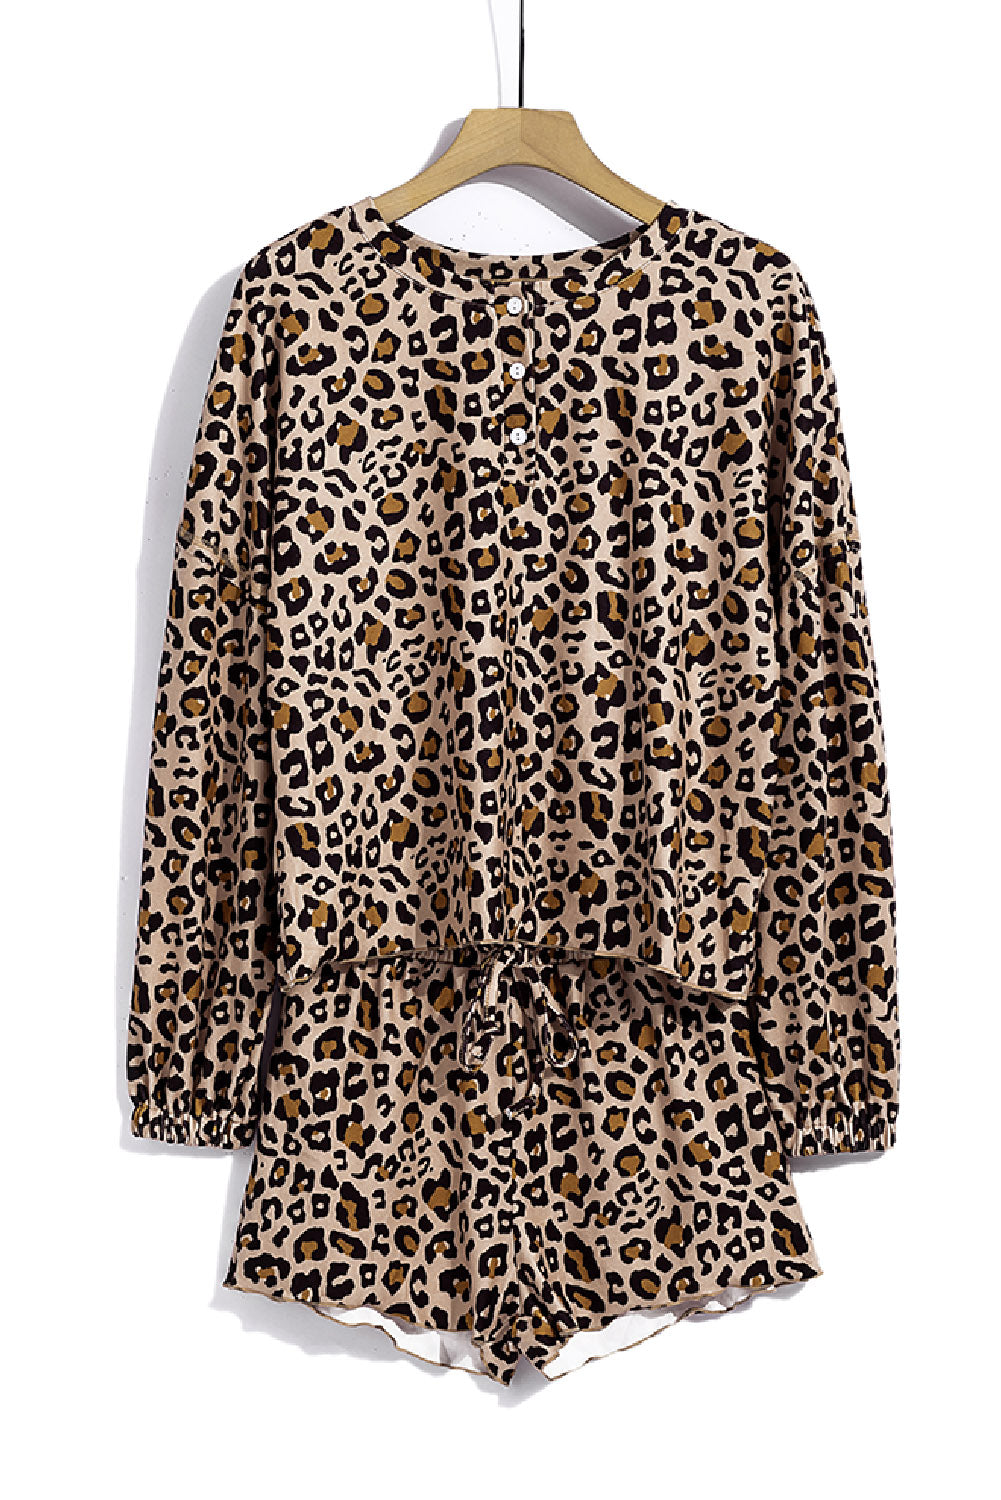 Ensemble Pyjama Femme Short Leopard Tricot Manches Longues